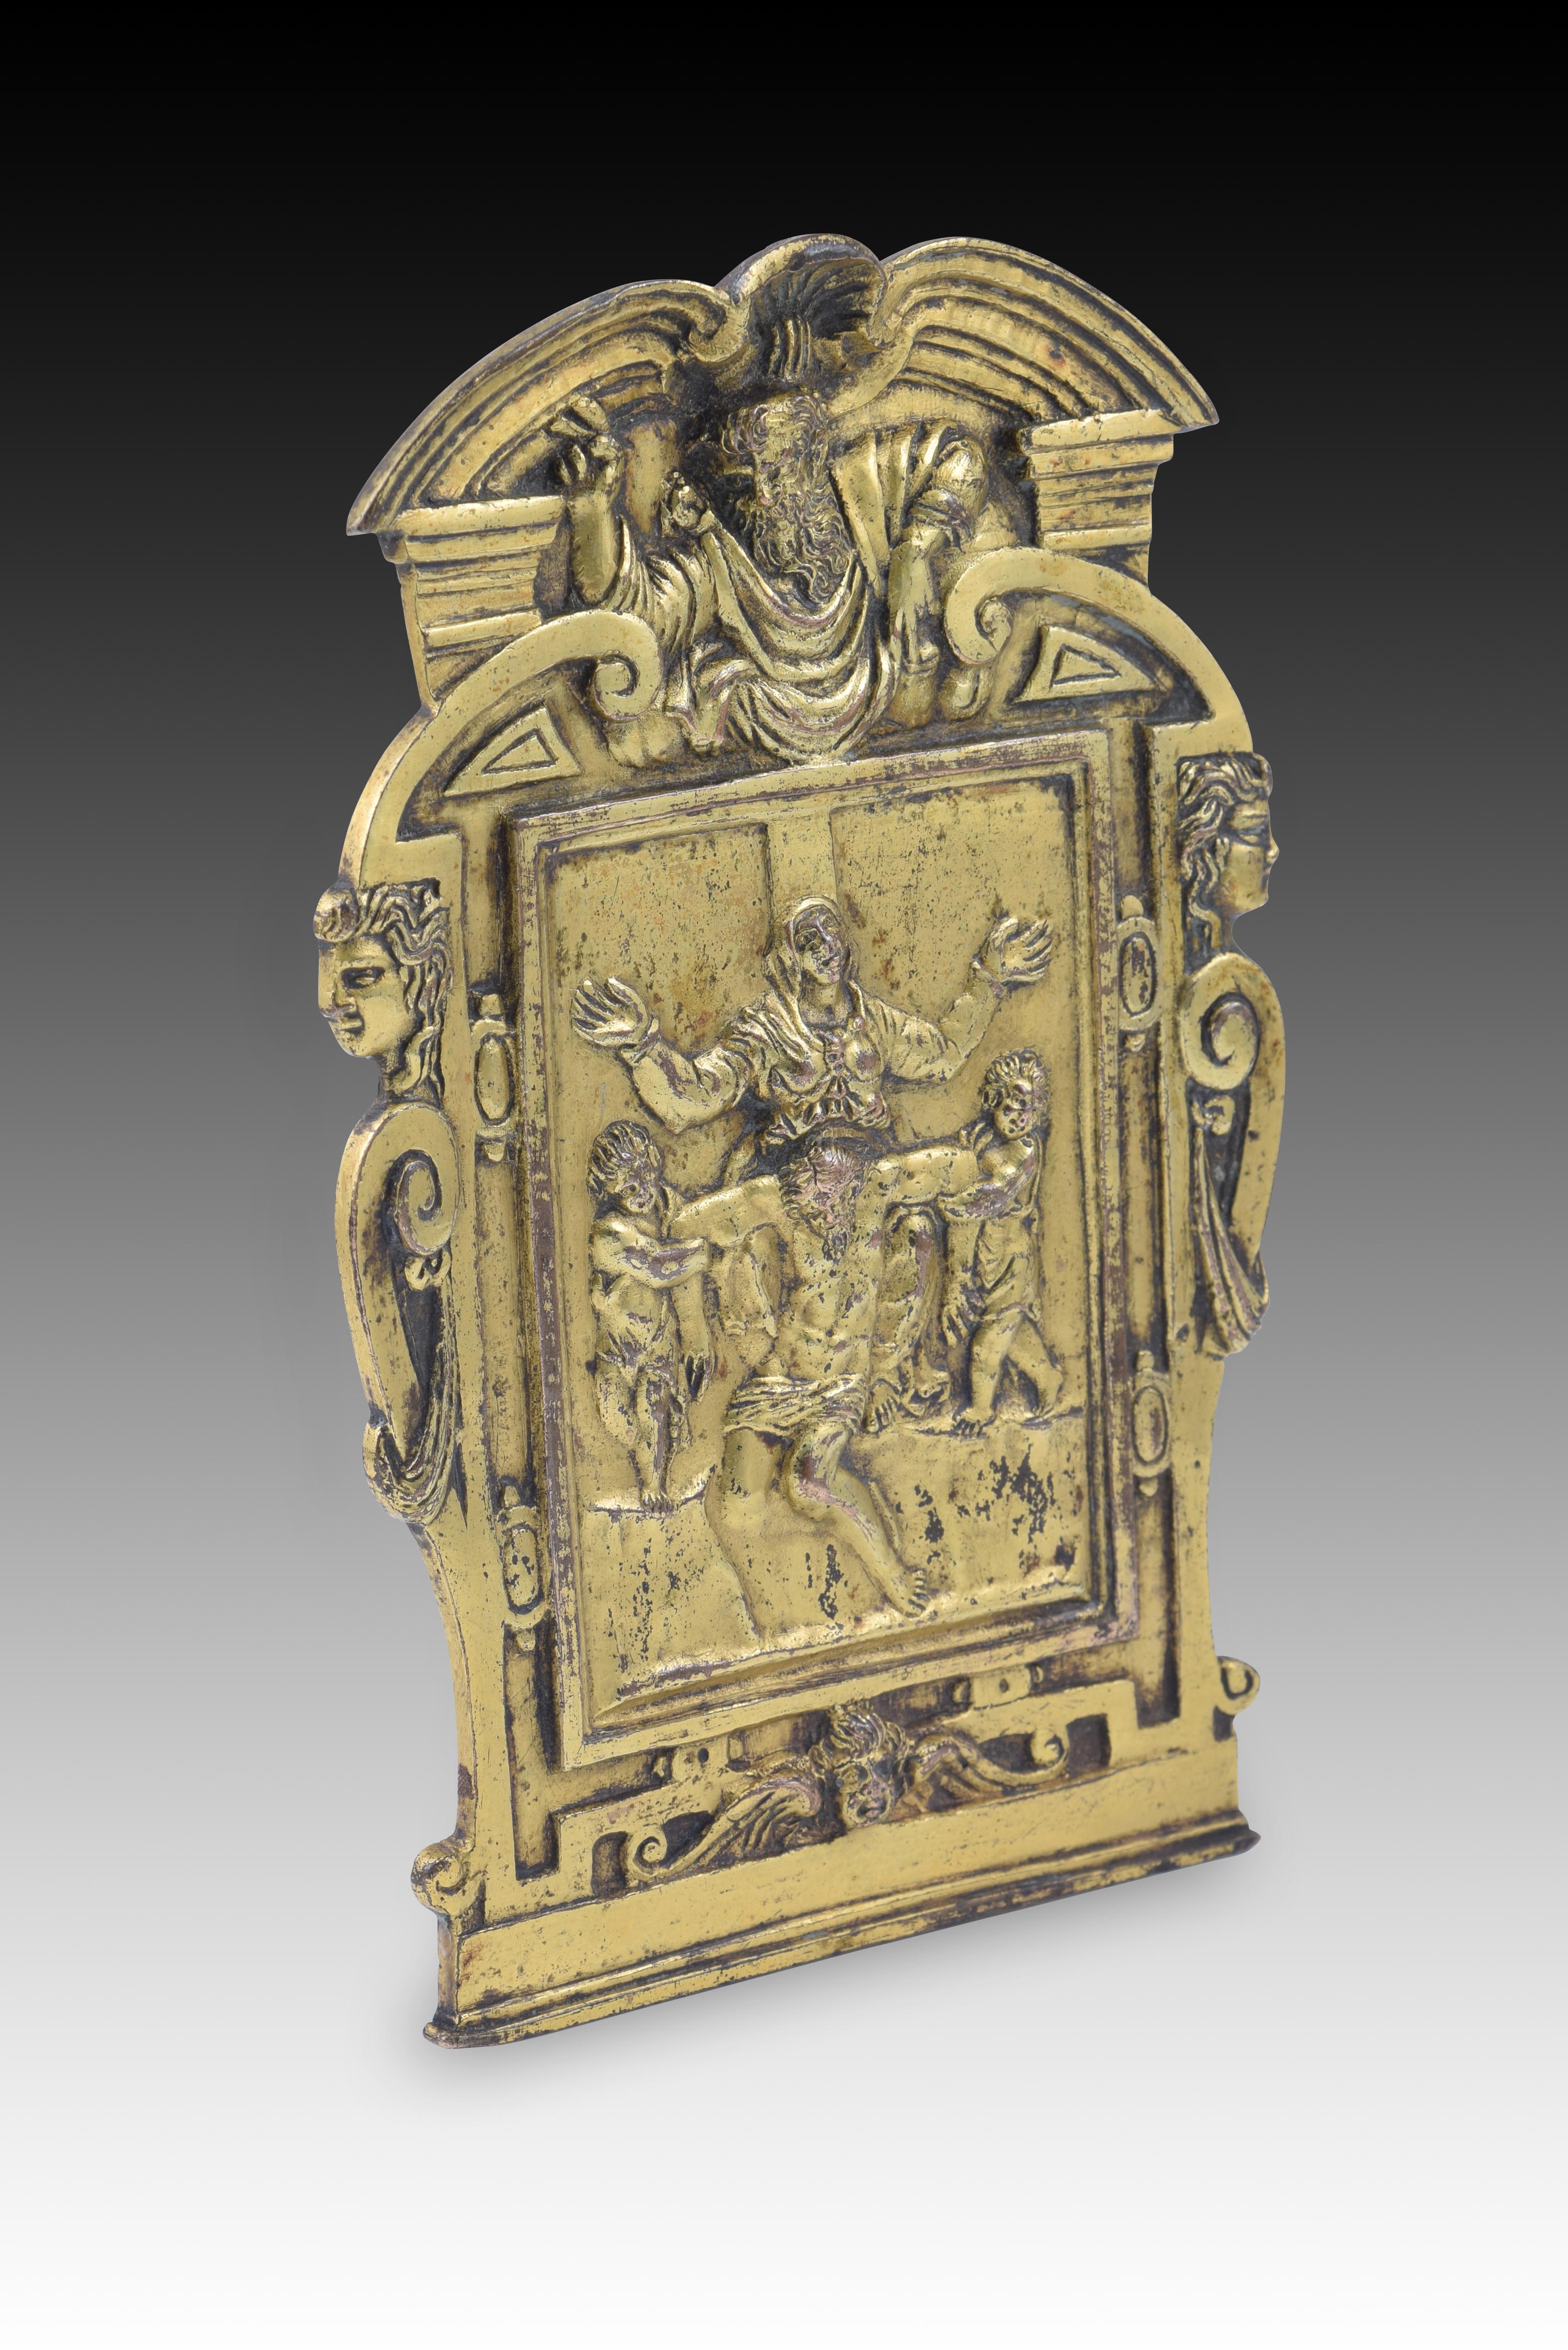 Friedenswächter, Barmherzigkeit. Goldene Bronze. Möglicherweise Rom, letztes Drittel des 16. Jahrhunderts - erstes Viertel des 17. Jahrhunderts, nach dem Vorbild von Michelangelo Buonarroti.
 Vergoldeter Bronzeteller mit einem Henkel auf der